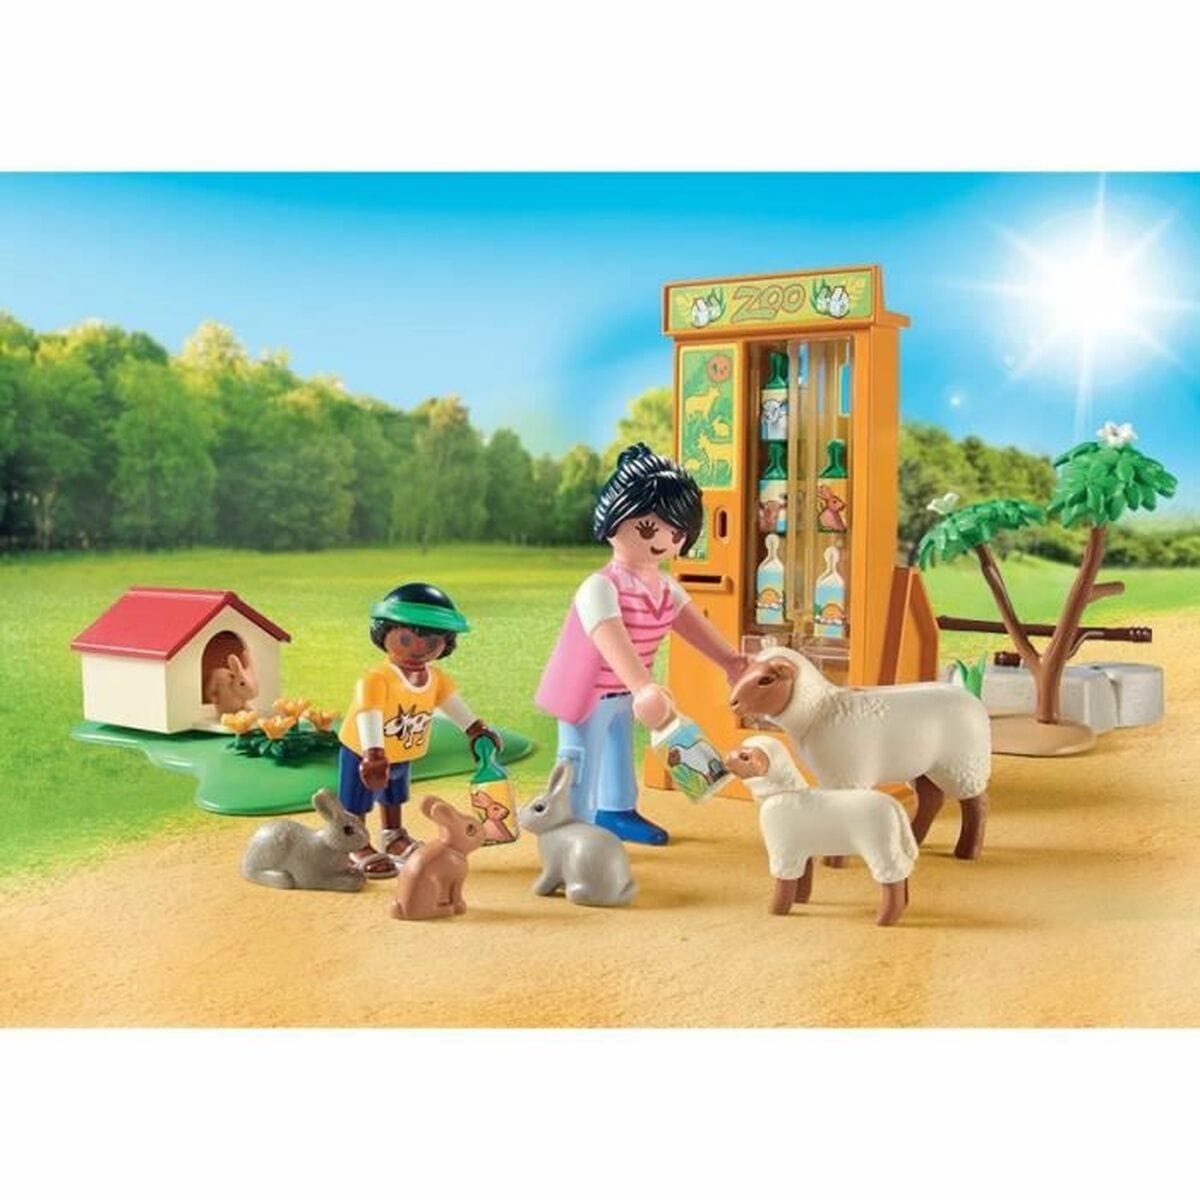 Playmobil Spielzeug | Kostüme > Spielzeug und Spiele > Action-Figuren Playset   Playmobil Family Fun - Educational farm 71191         63 Stücke